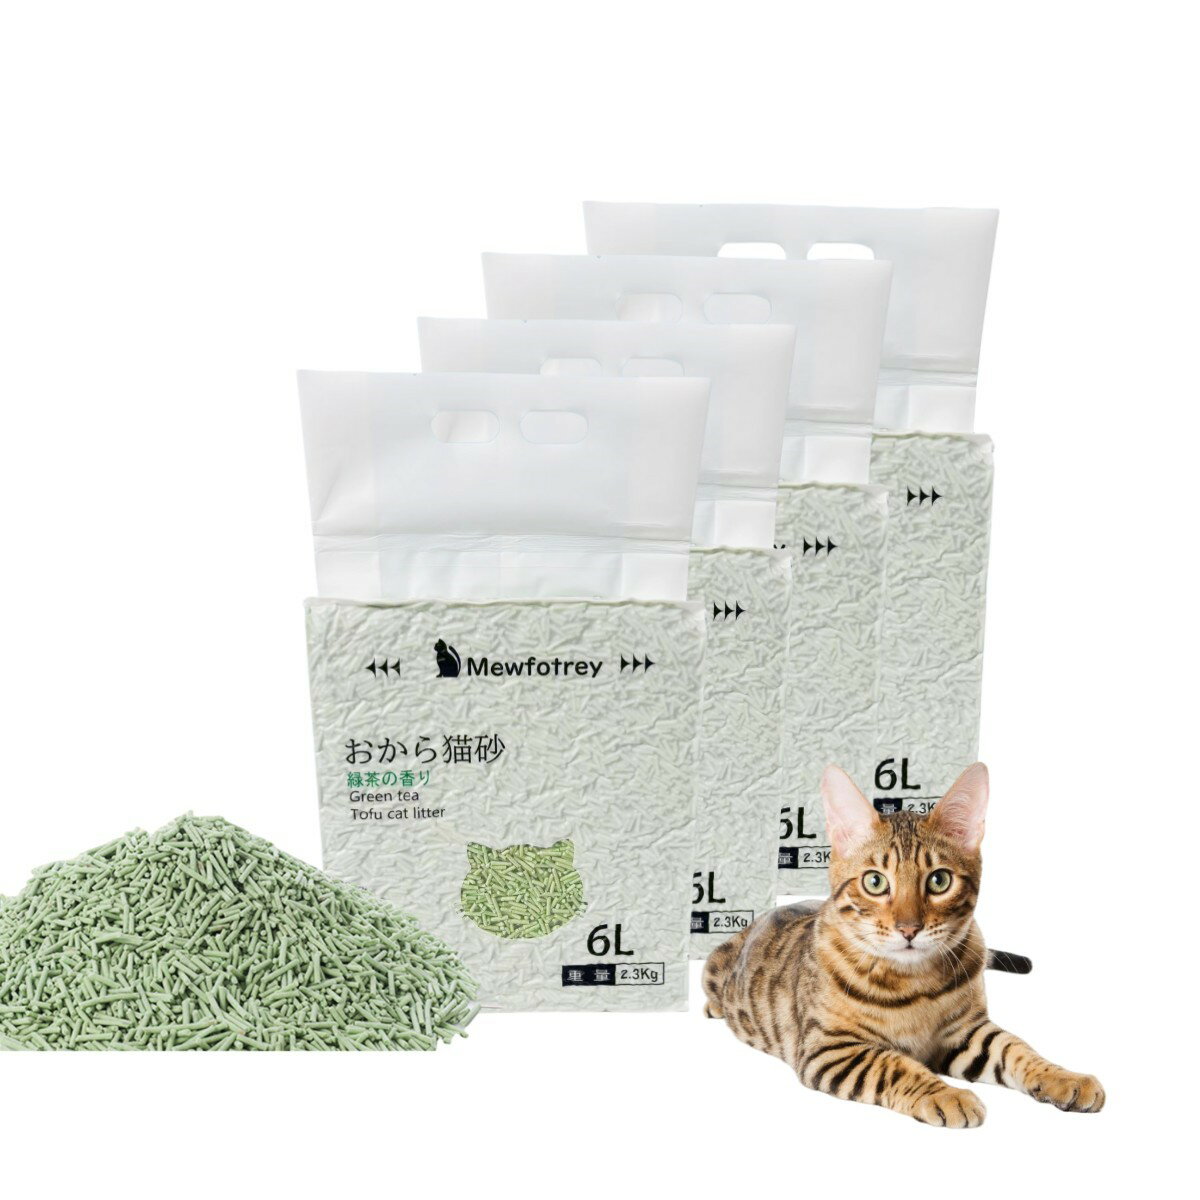 猫砂 おから お茶香り おからの猫砂 6L×4袋セット ネコトイレ砂 ねこ砂 トイレに流せる 燃やせる 燃えるゴミ 香り 抗菌 消臭